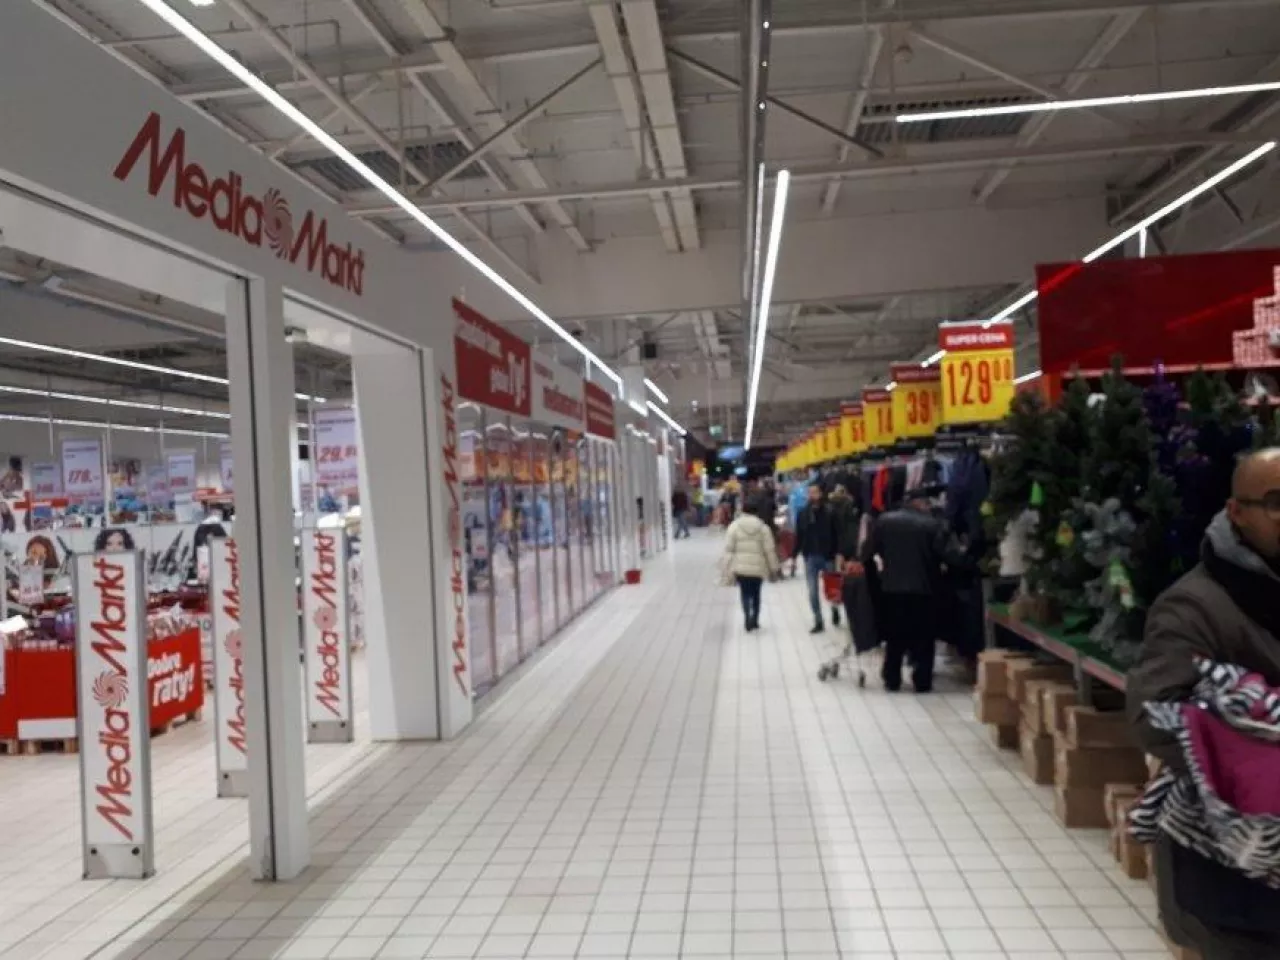 Na zdj. stoisko MediaMarkt wewnątrz hipermarketu Carrefour w Warszawie (fot. wiadomoscihandlowe.pl)